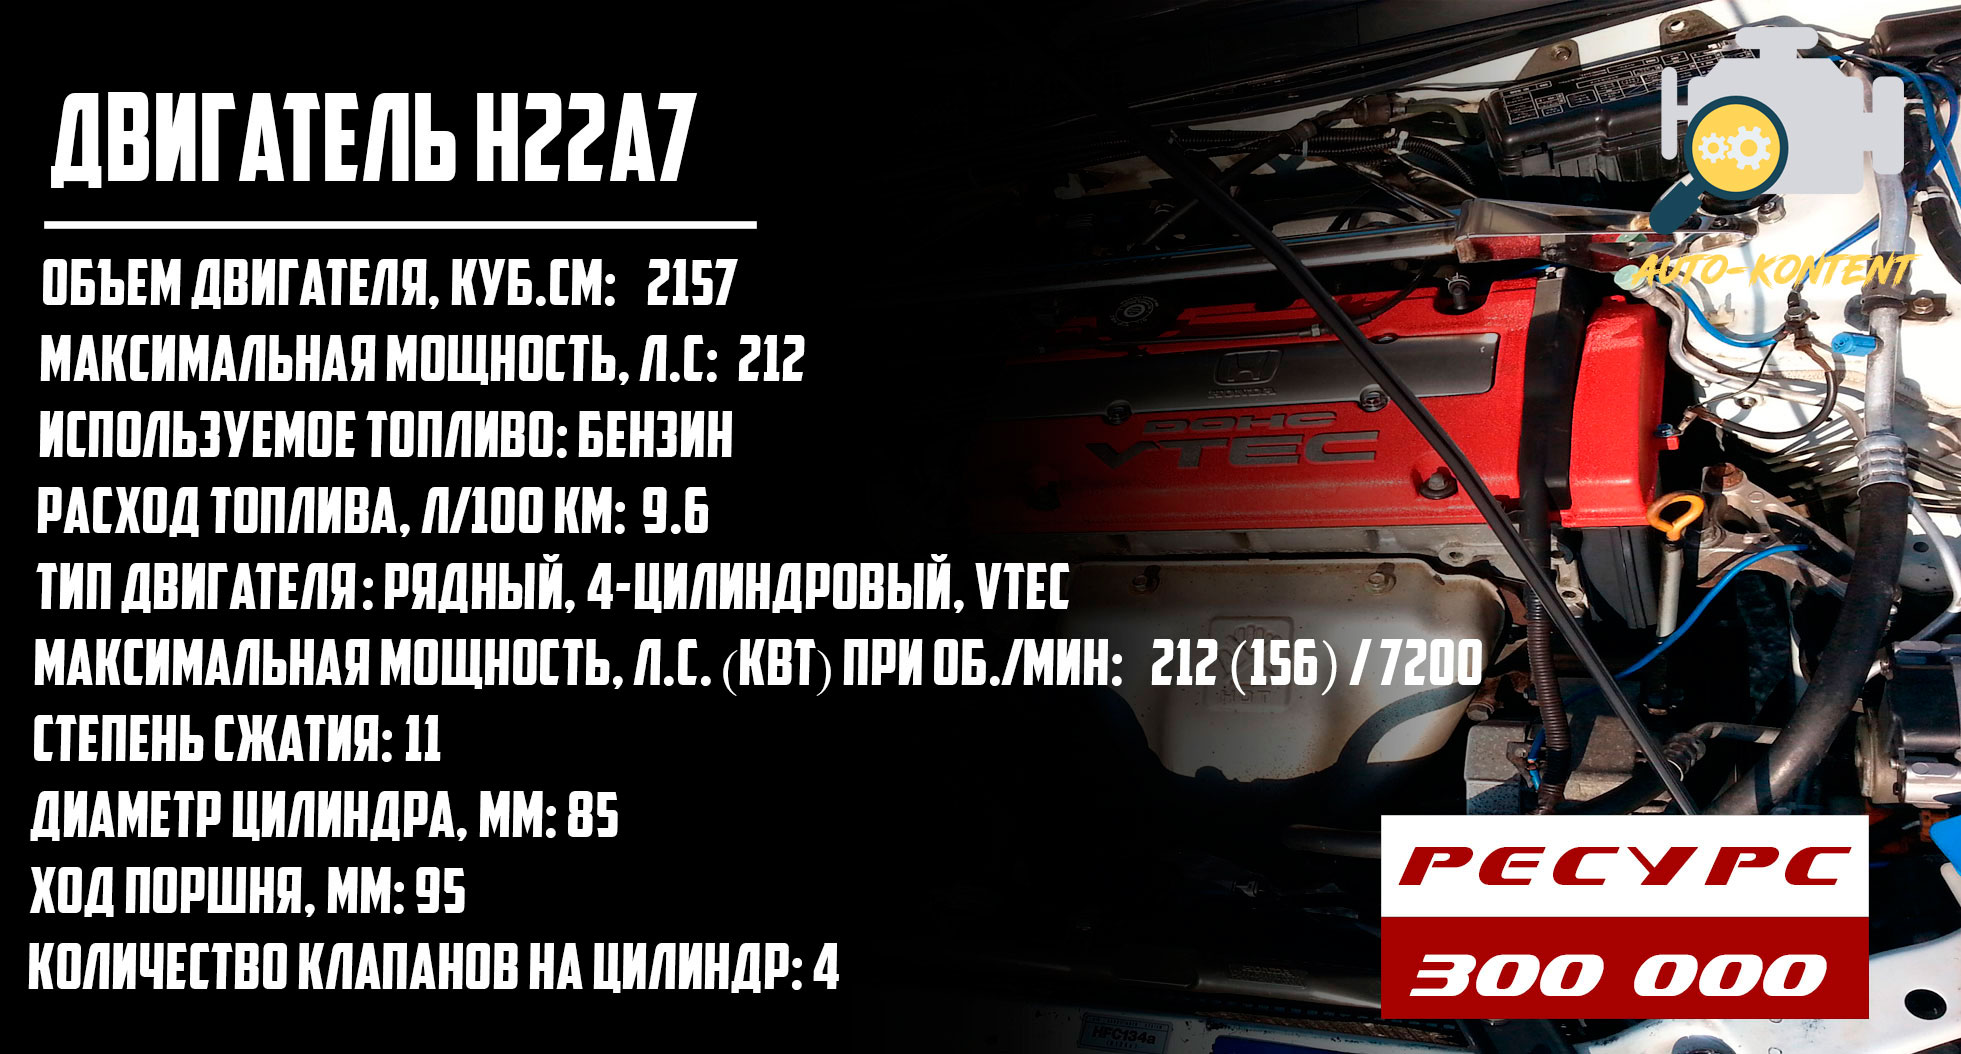 H22A7